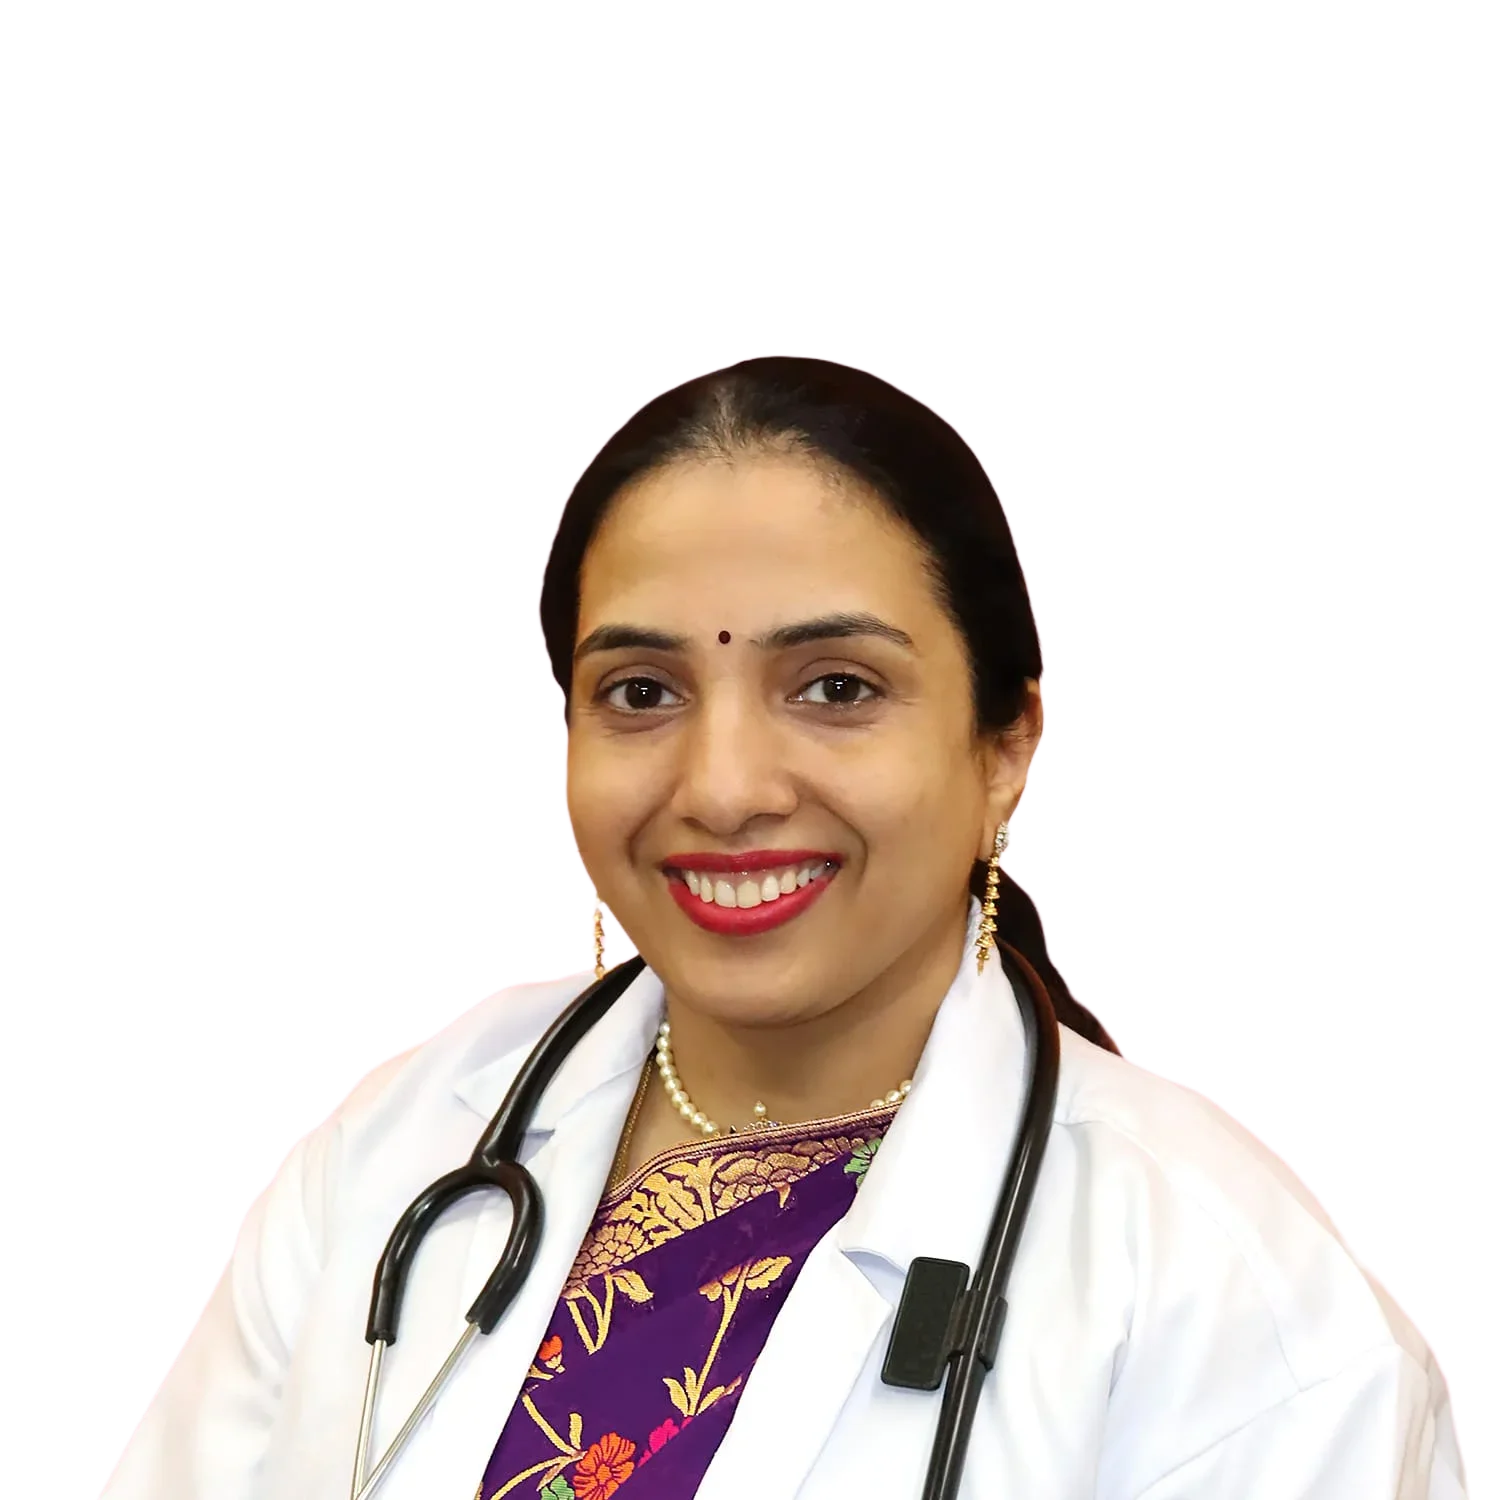 Best IVF Doctor in Bangalore - Dr Maheshwari